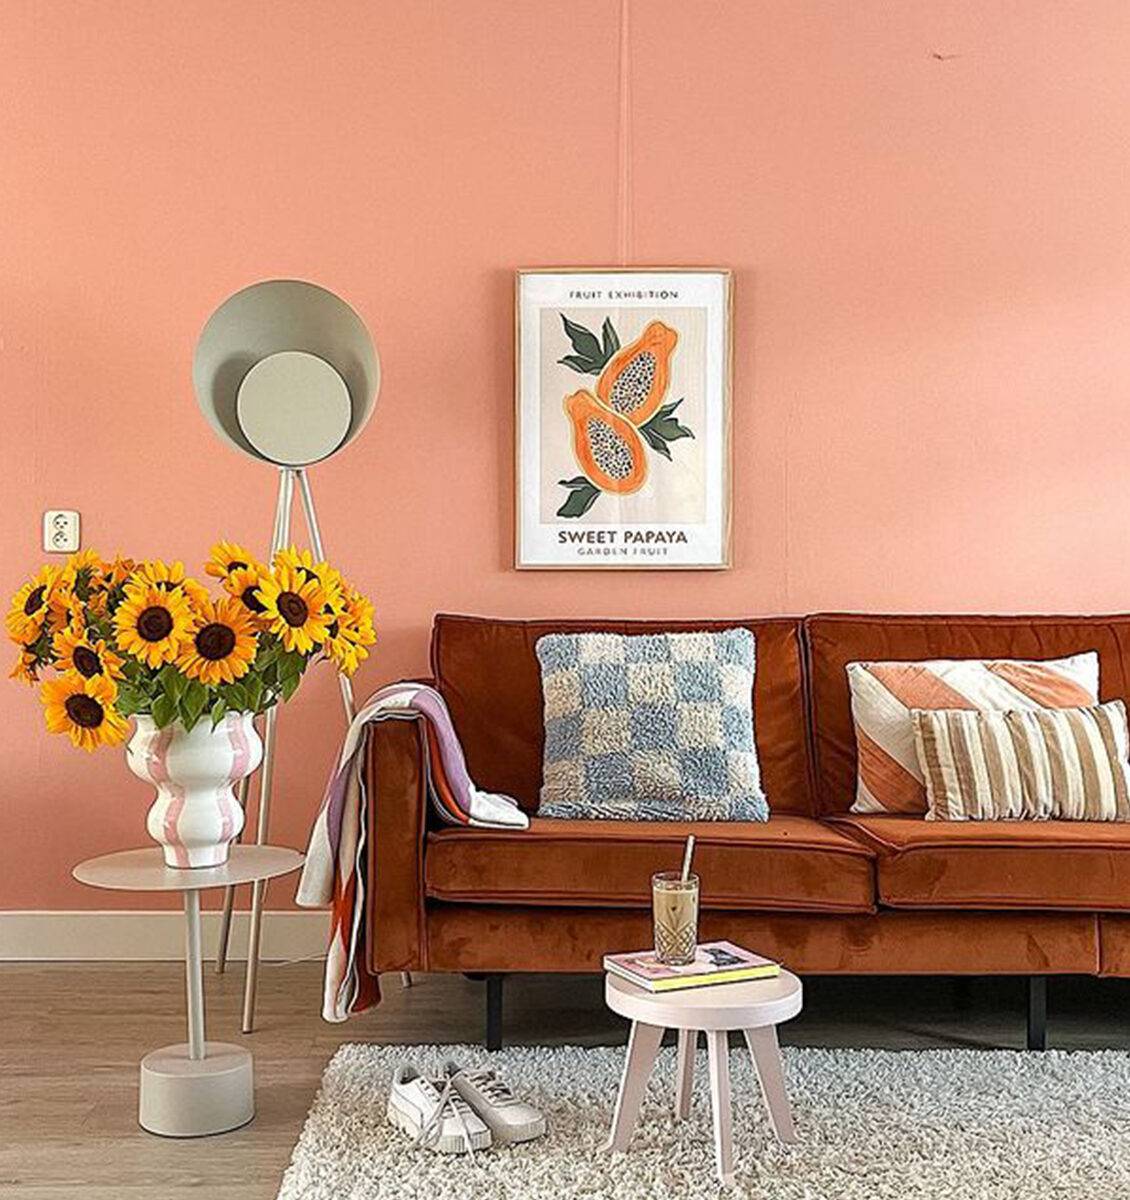 NL lijst aan zacht roze muur in woonkamer